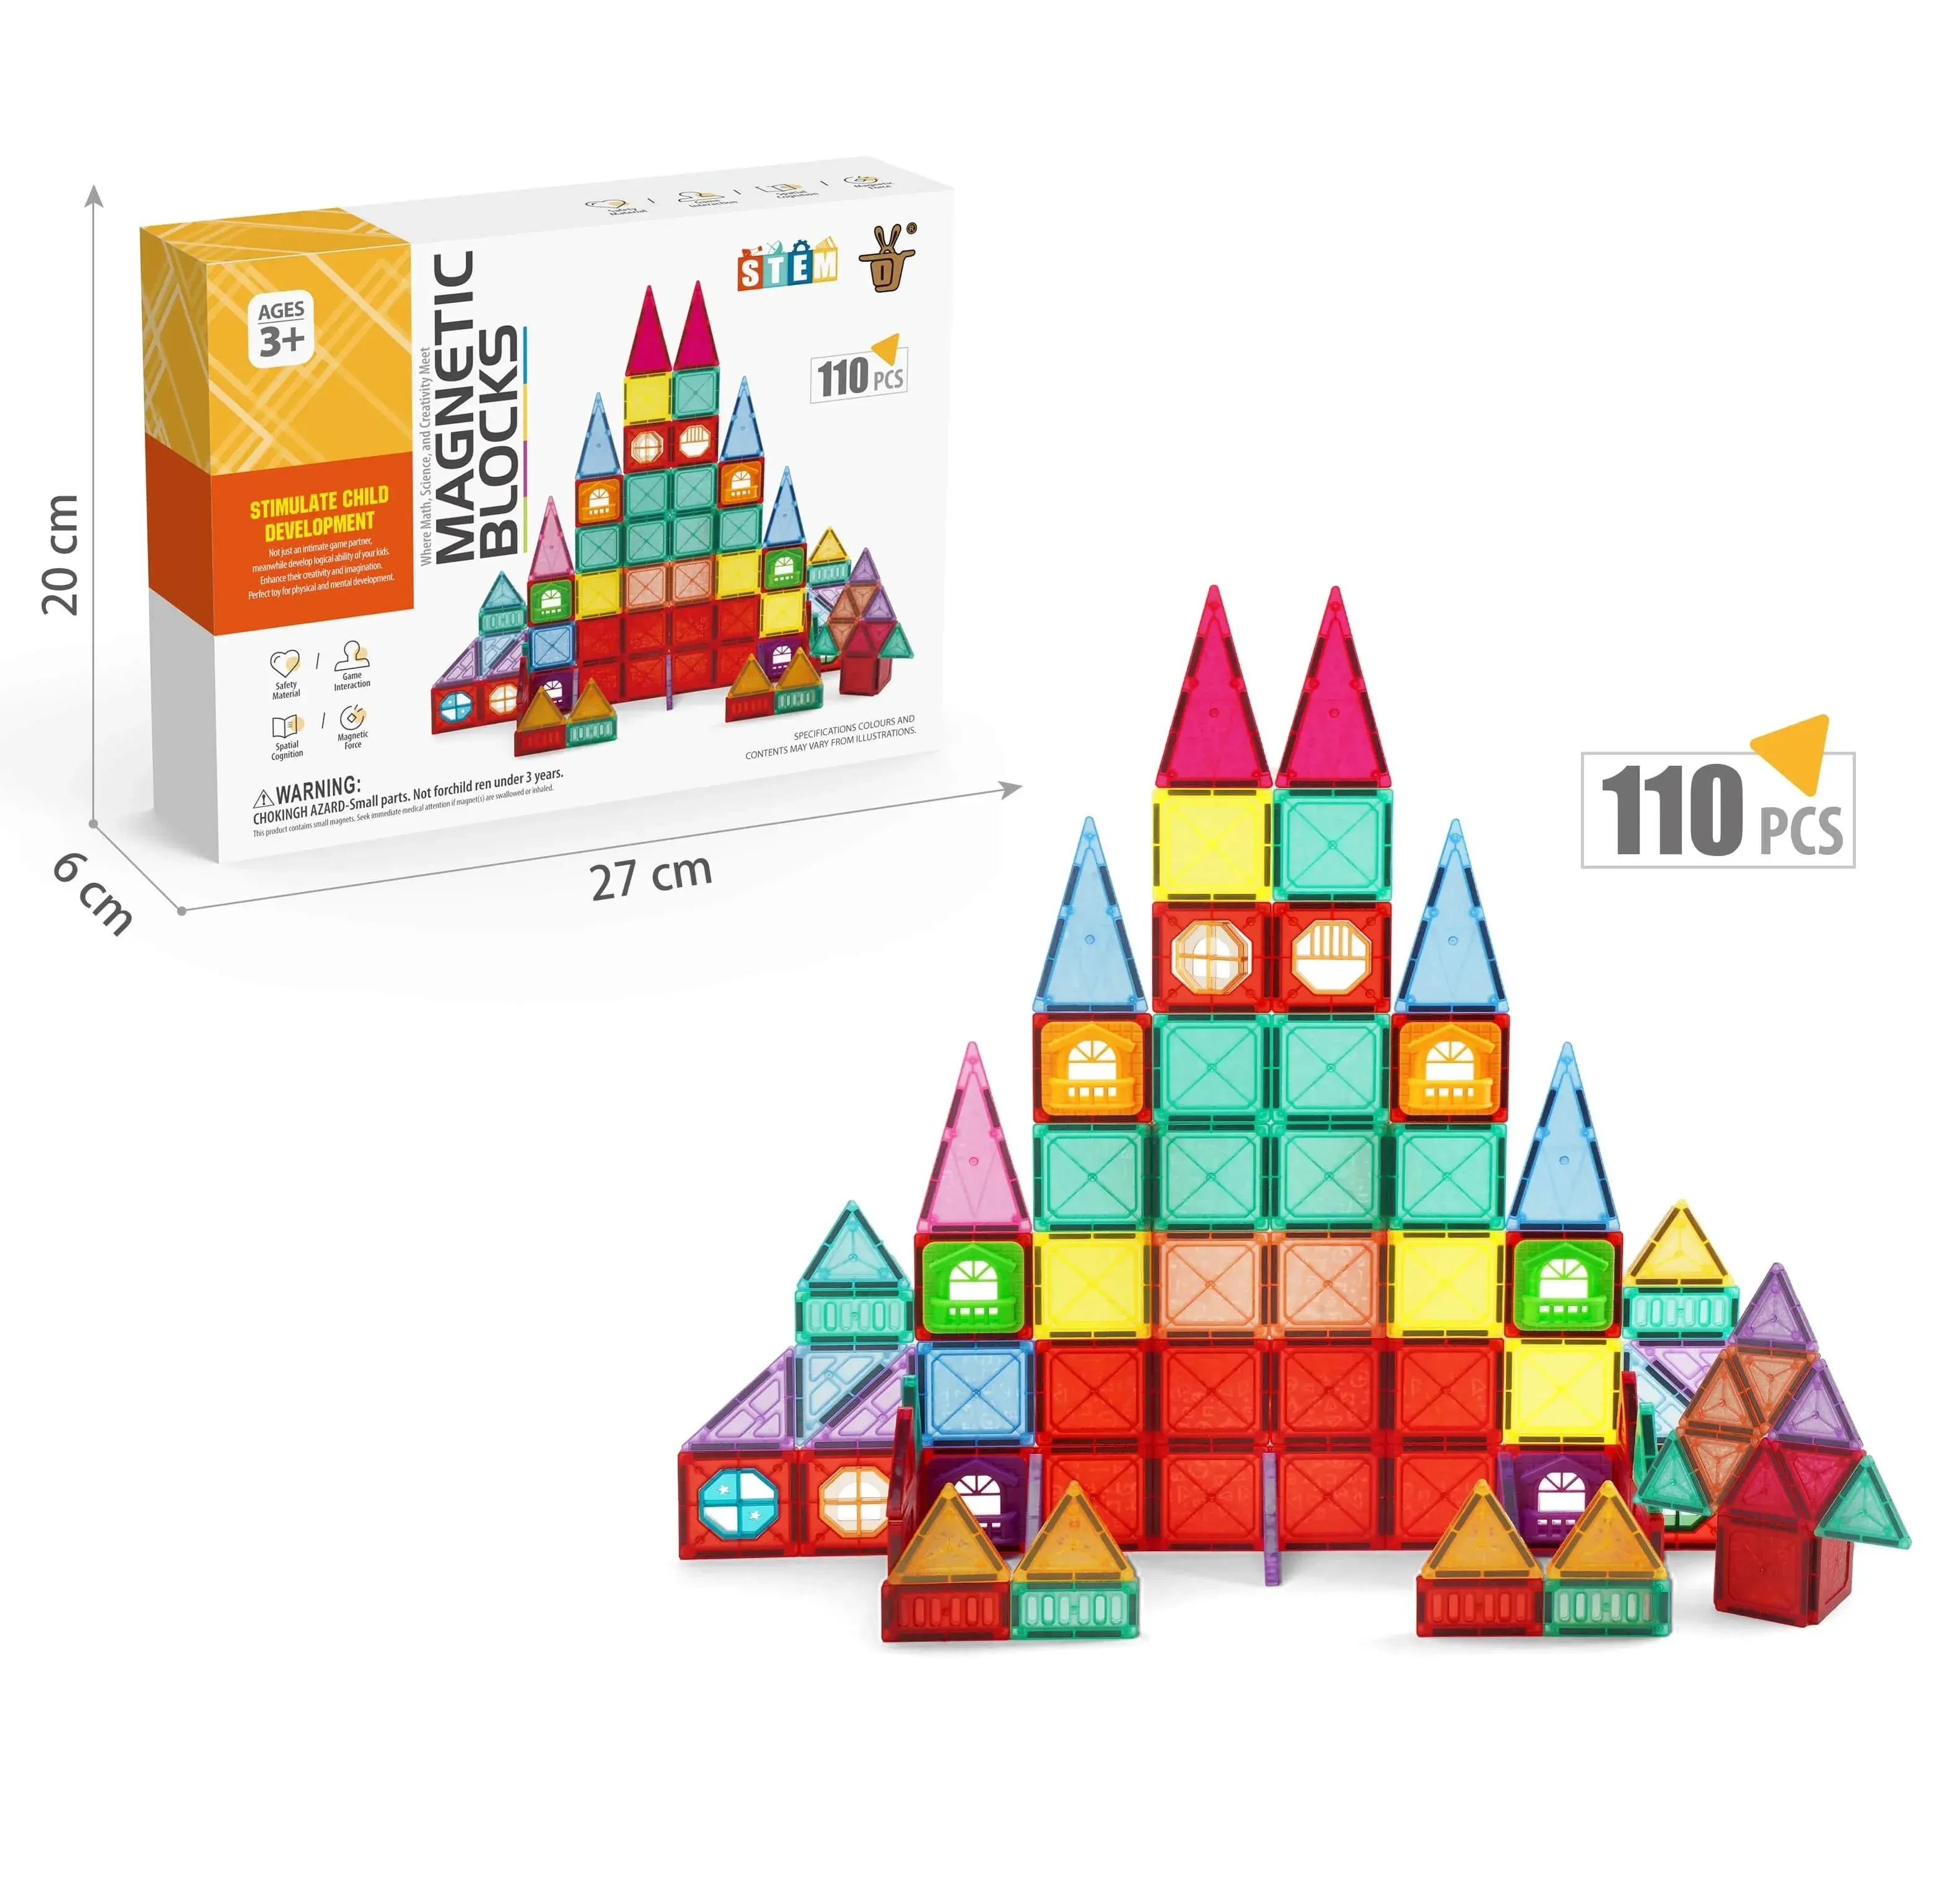 Stam Speelgoed Kinderen Ontwikkeling 110Pcs Magnetisch Blok Set Speelgoed Bouwstenen Magnetische Educatieve Tegels Speelgoed